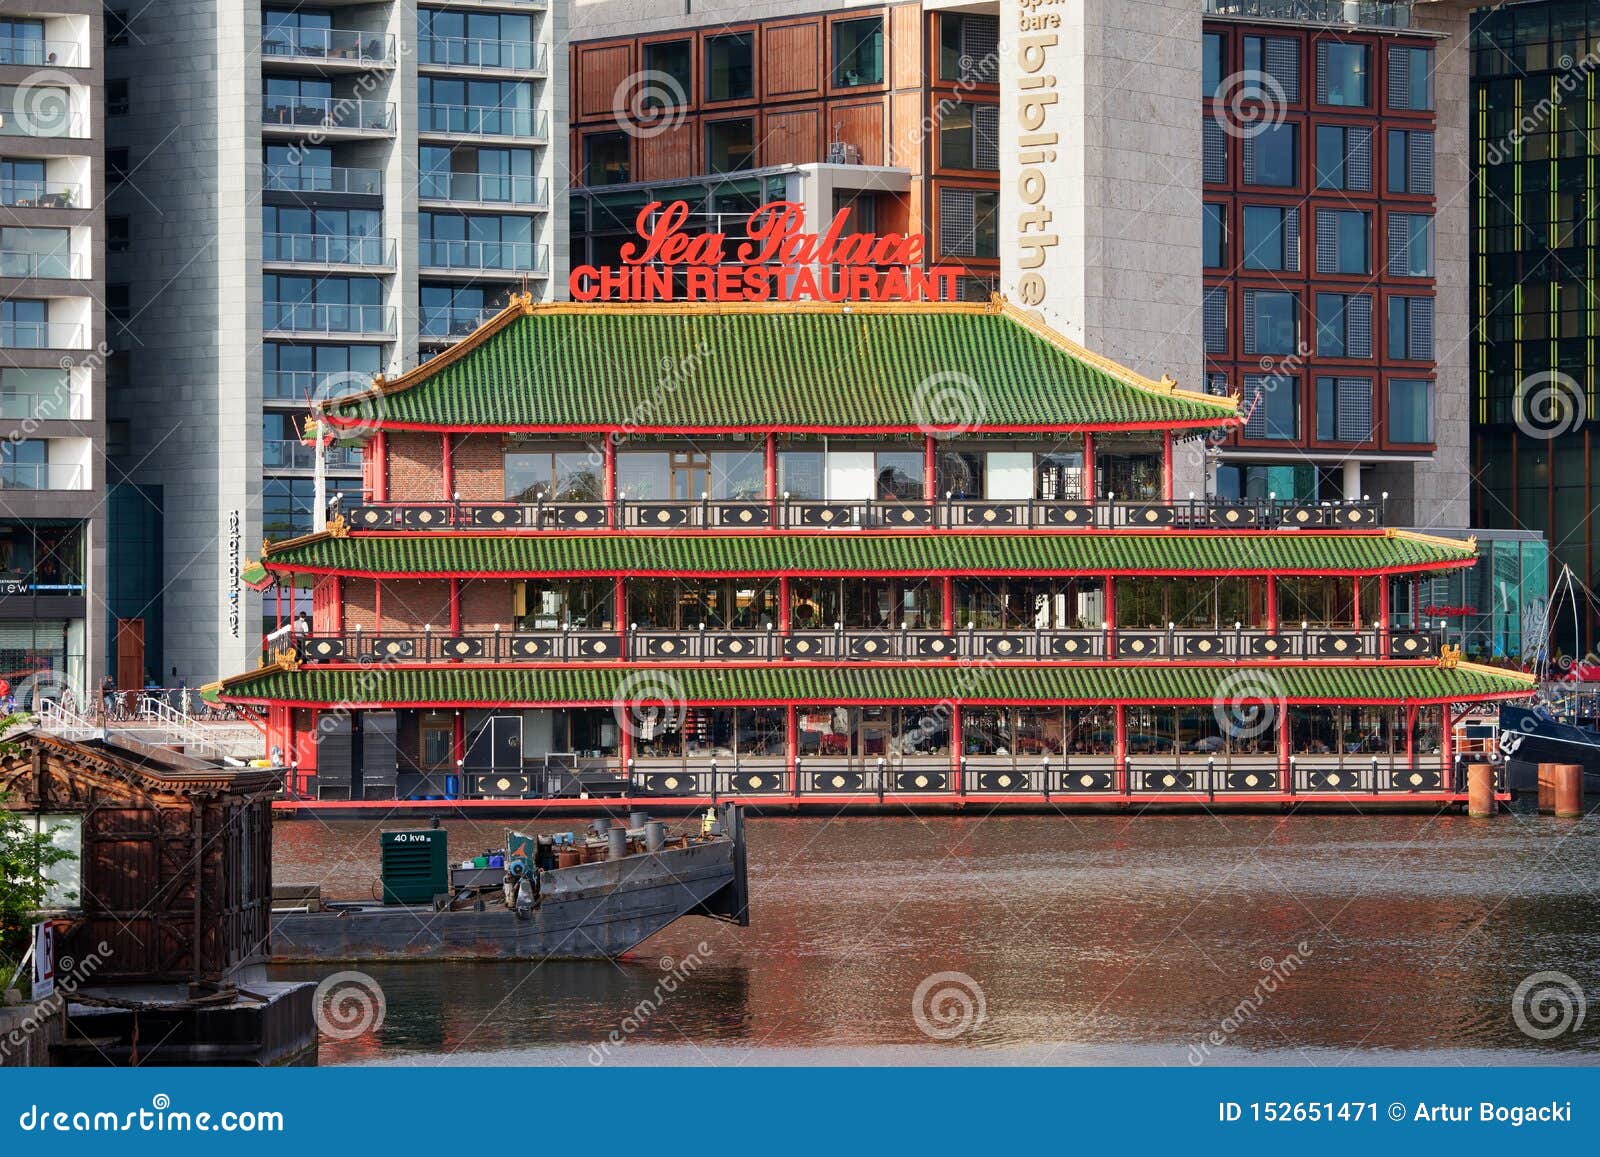 Chinese Restaurant Sea Palace in Amsterdam. Amsterdão, Holanda, Países Baixos - 13 de maio de 2013: Palácio do mar do restaurante, o primeiro restaurante chinês de flutuação em Europa